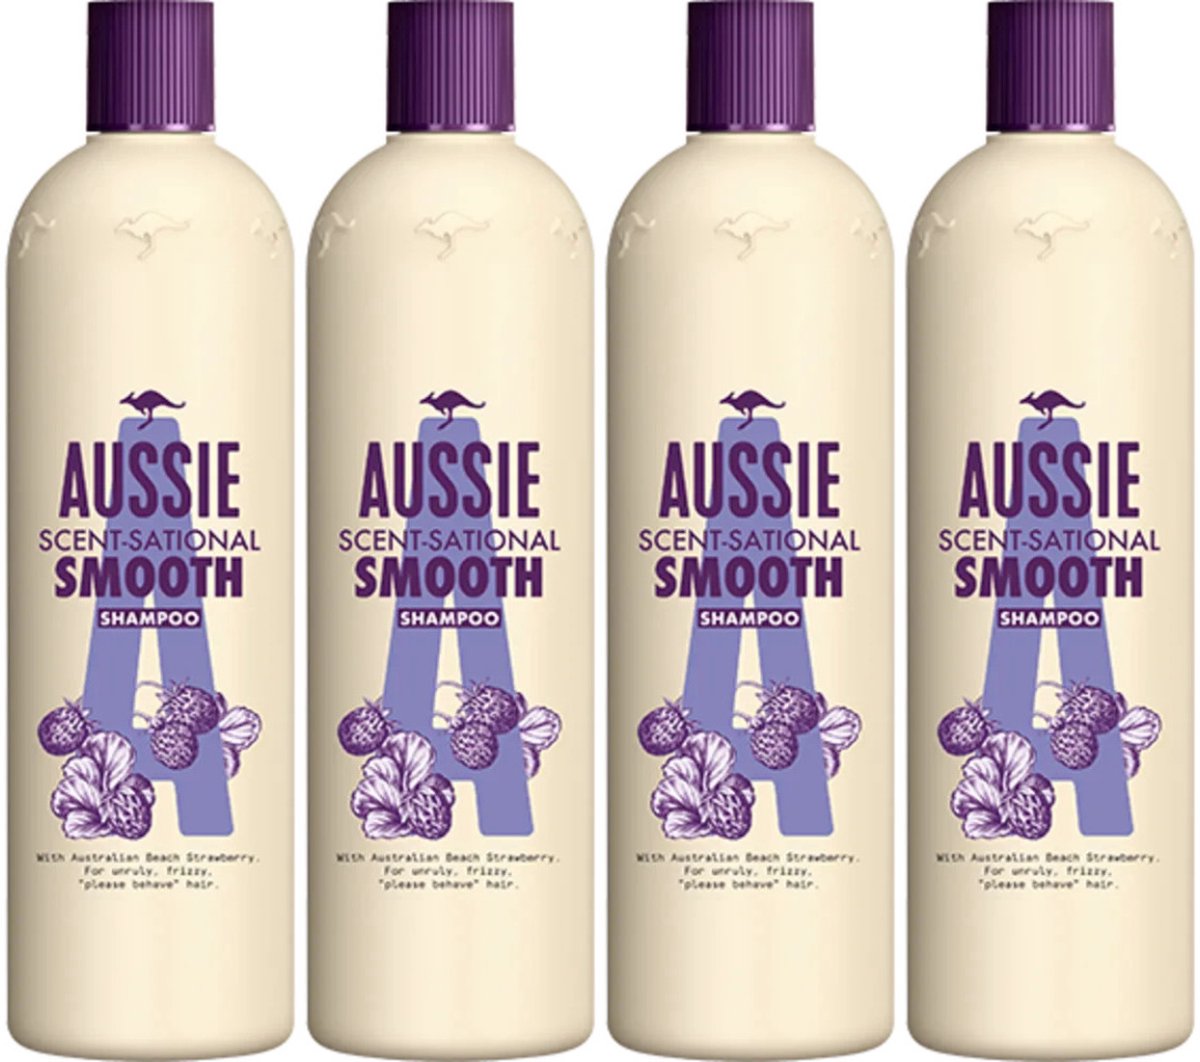 Aussie Scent Sational Smooth Shampoo Voordeelbundel - 4 x 300 ml